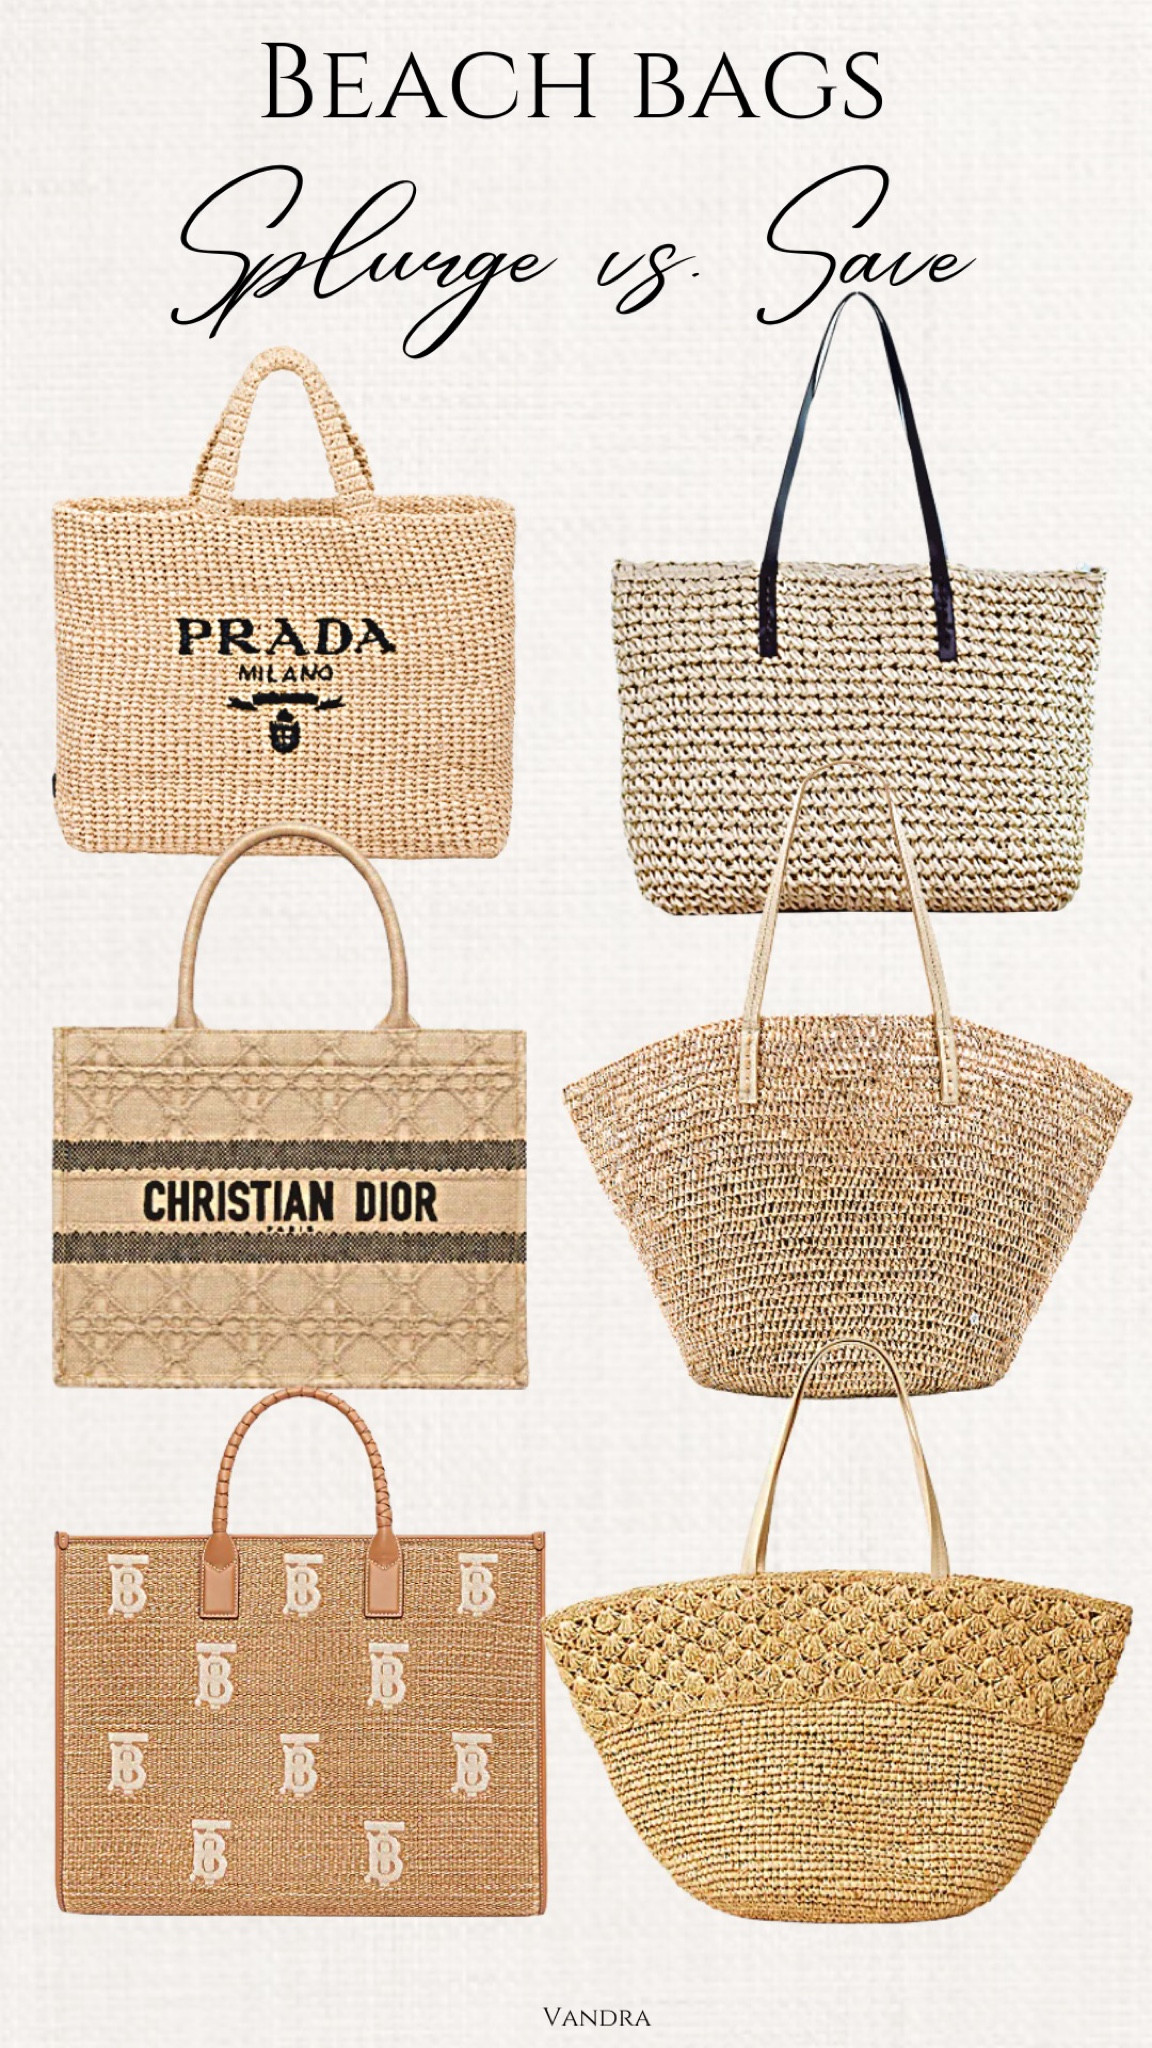 Prada Summer Tote Bags